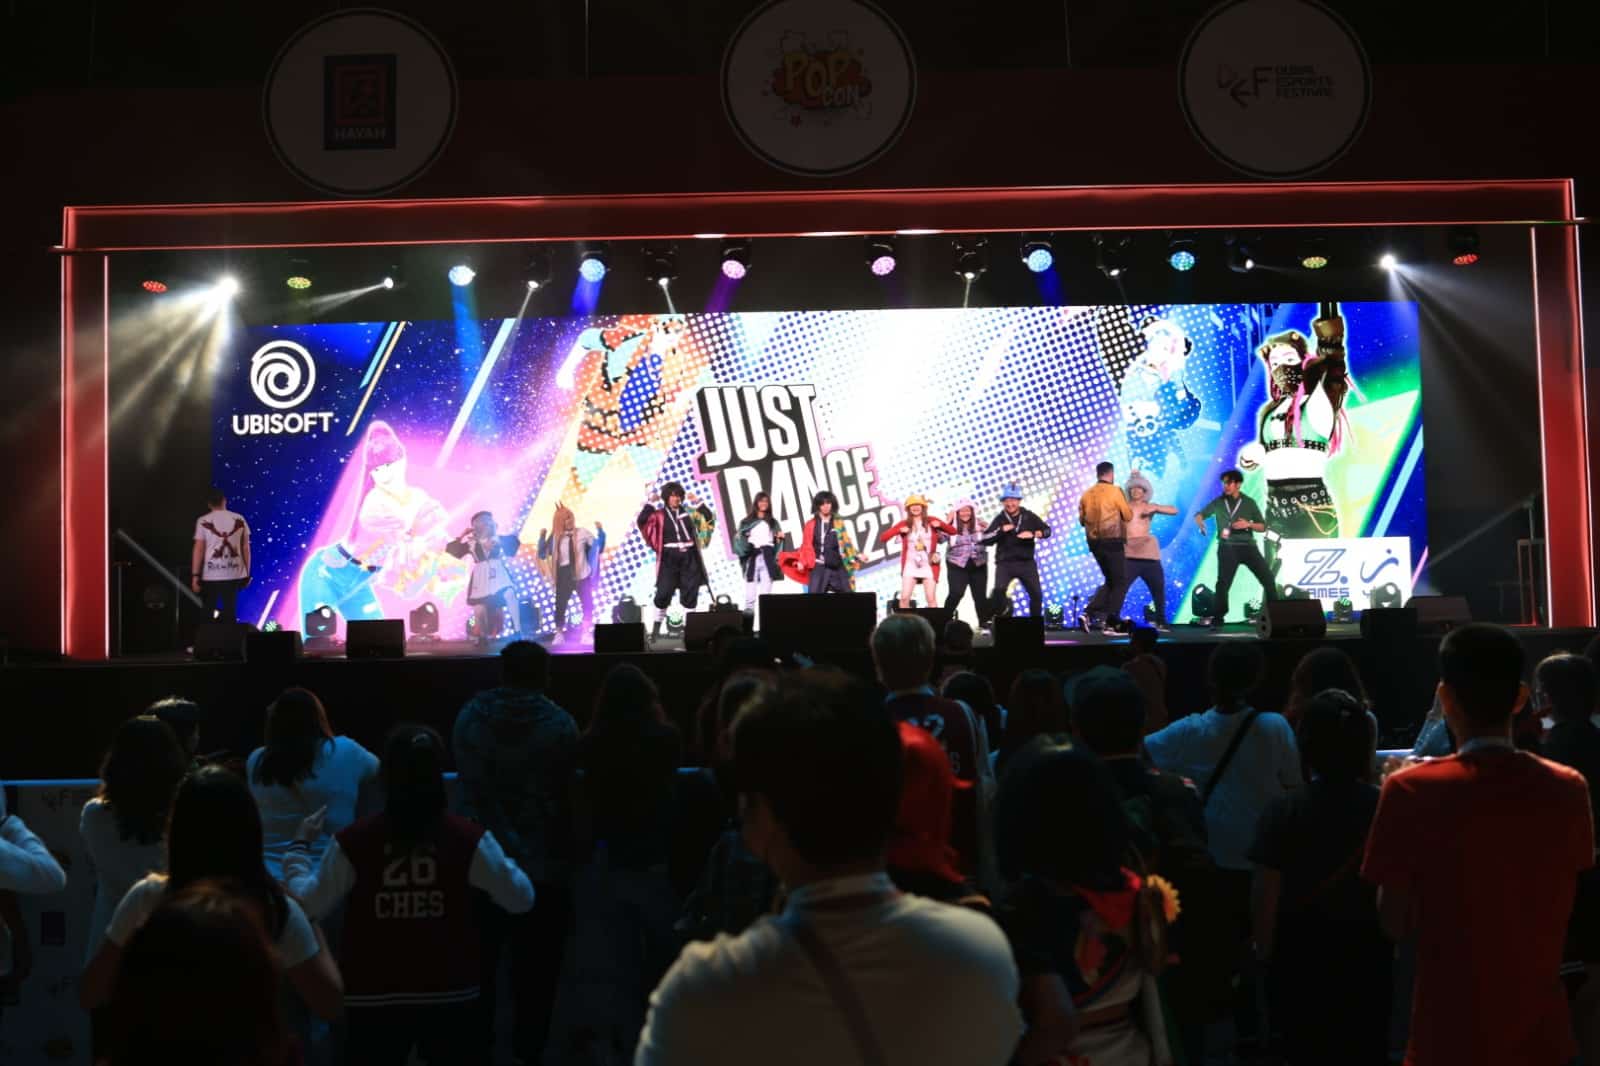 El Dubai Digital Games and Sports Festival regresará para su segunda edición del 21 al 25 de junio